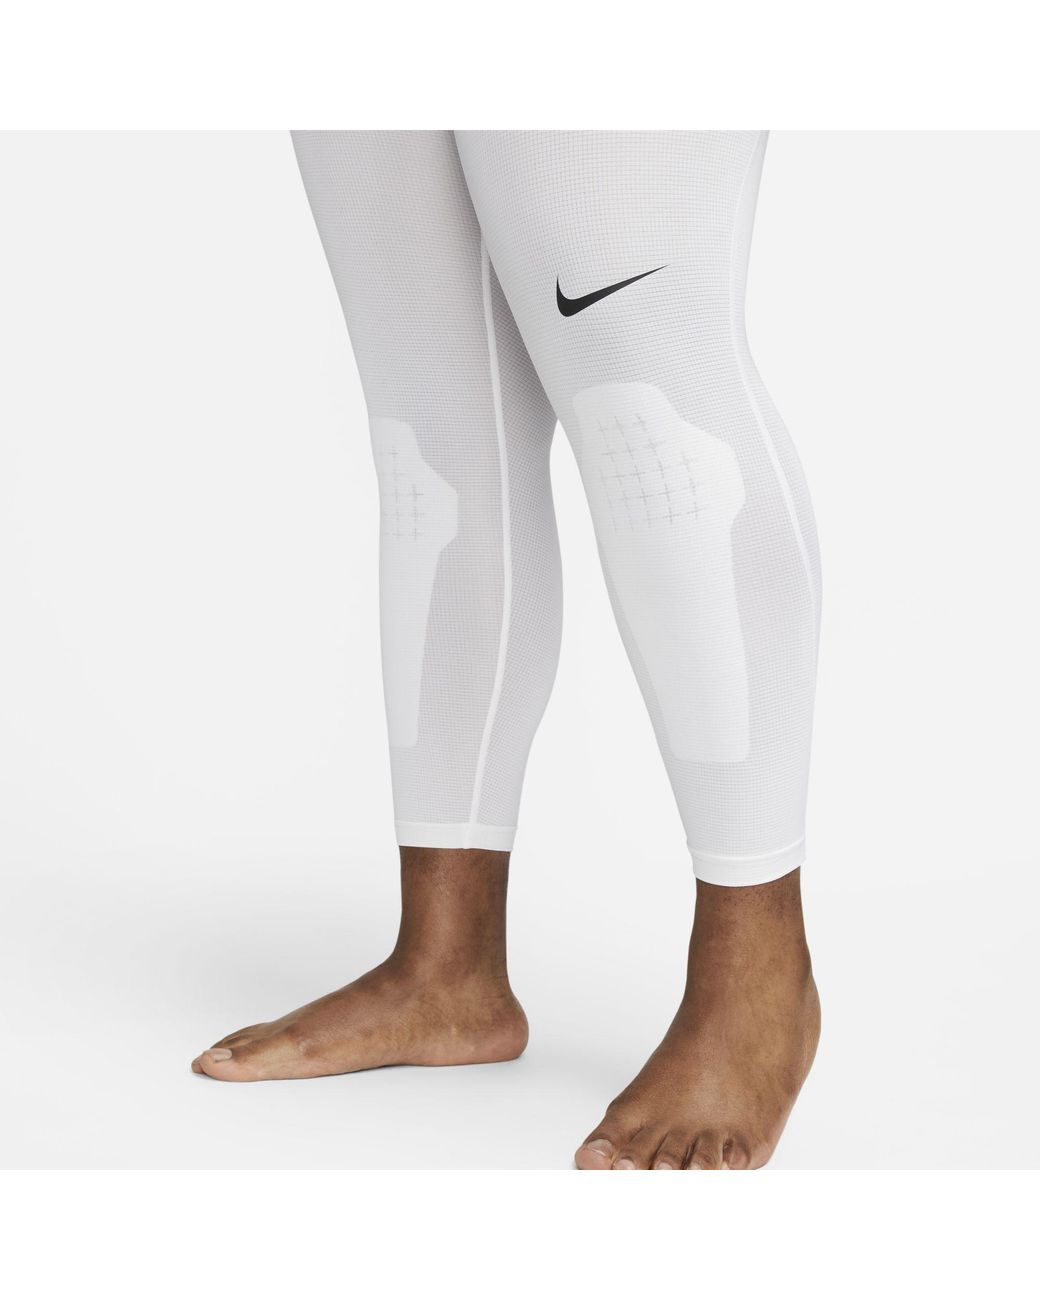 one leg compression pants basketball woman｜TikTok Search